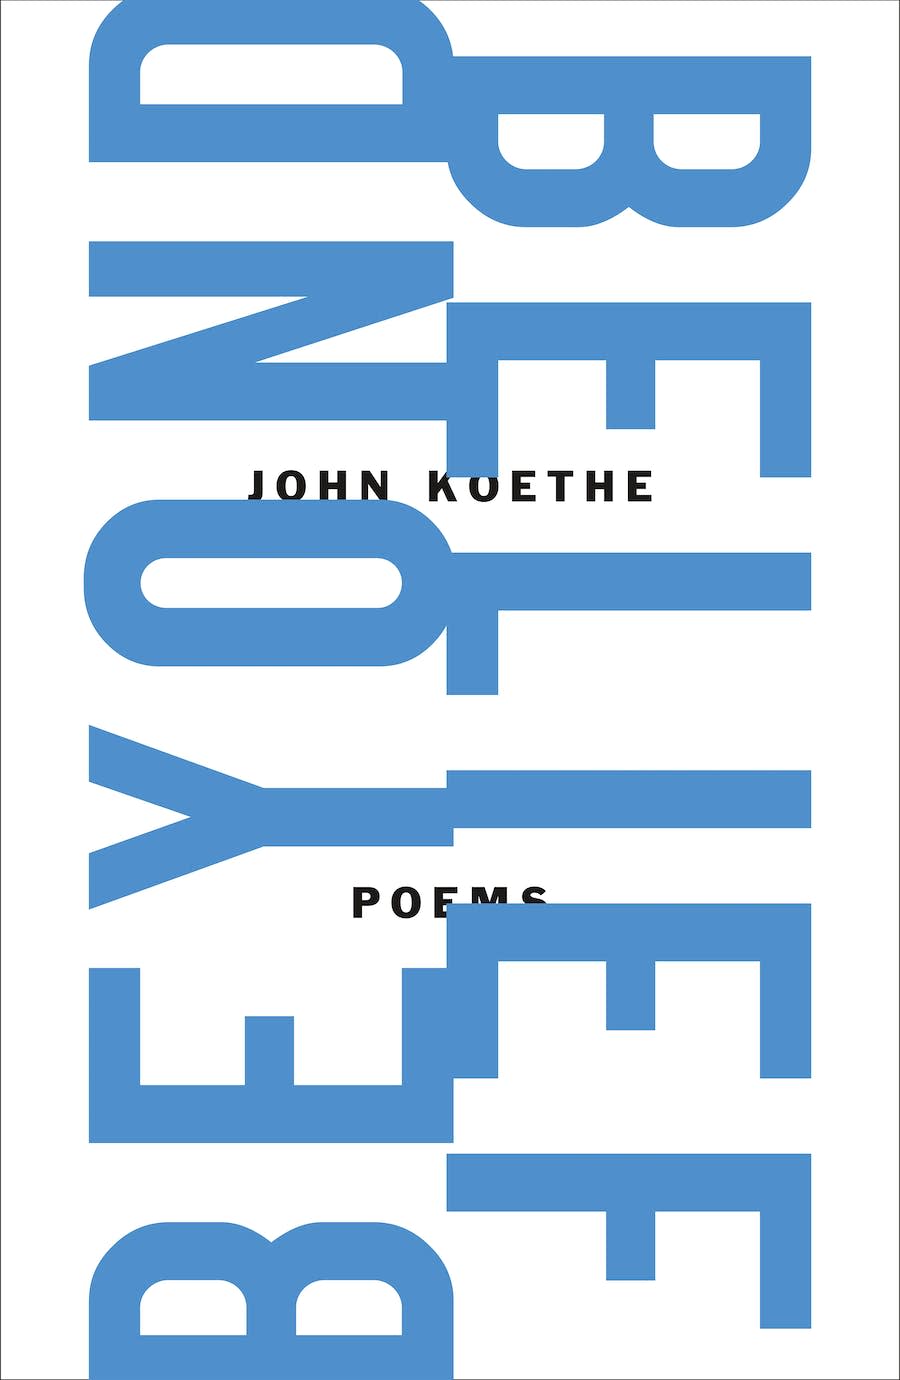 Beyond Belief: Poems. By John Koethe.